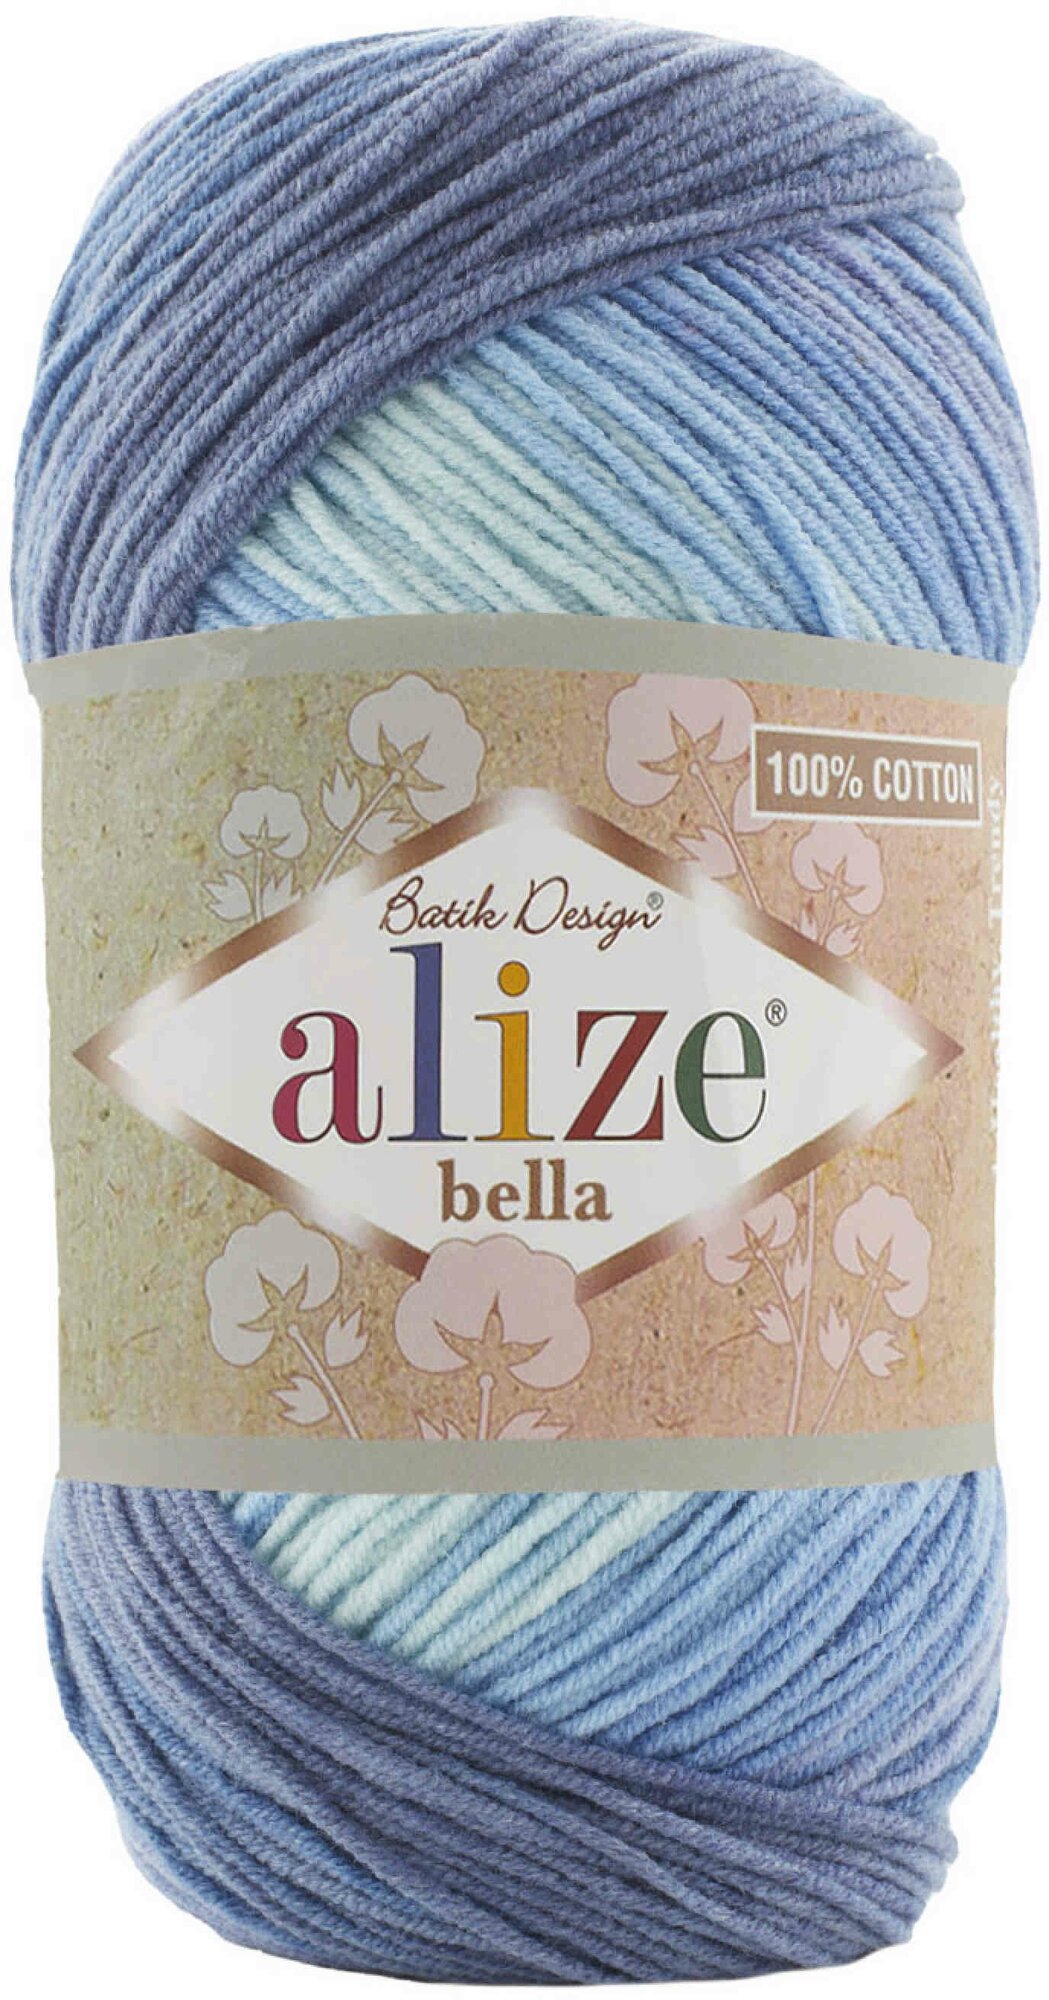 Пряжа Alize Bella Batik 100 светло-голубой-голубой-синий (3299), 100%хлопок, 360м, 100г, 1шт